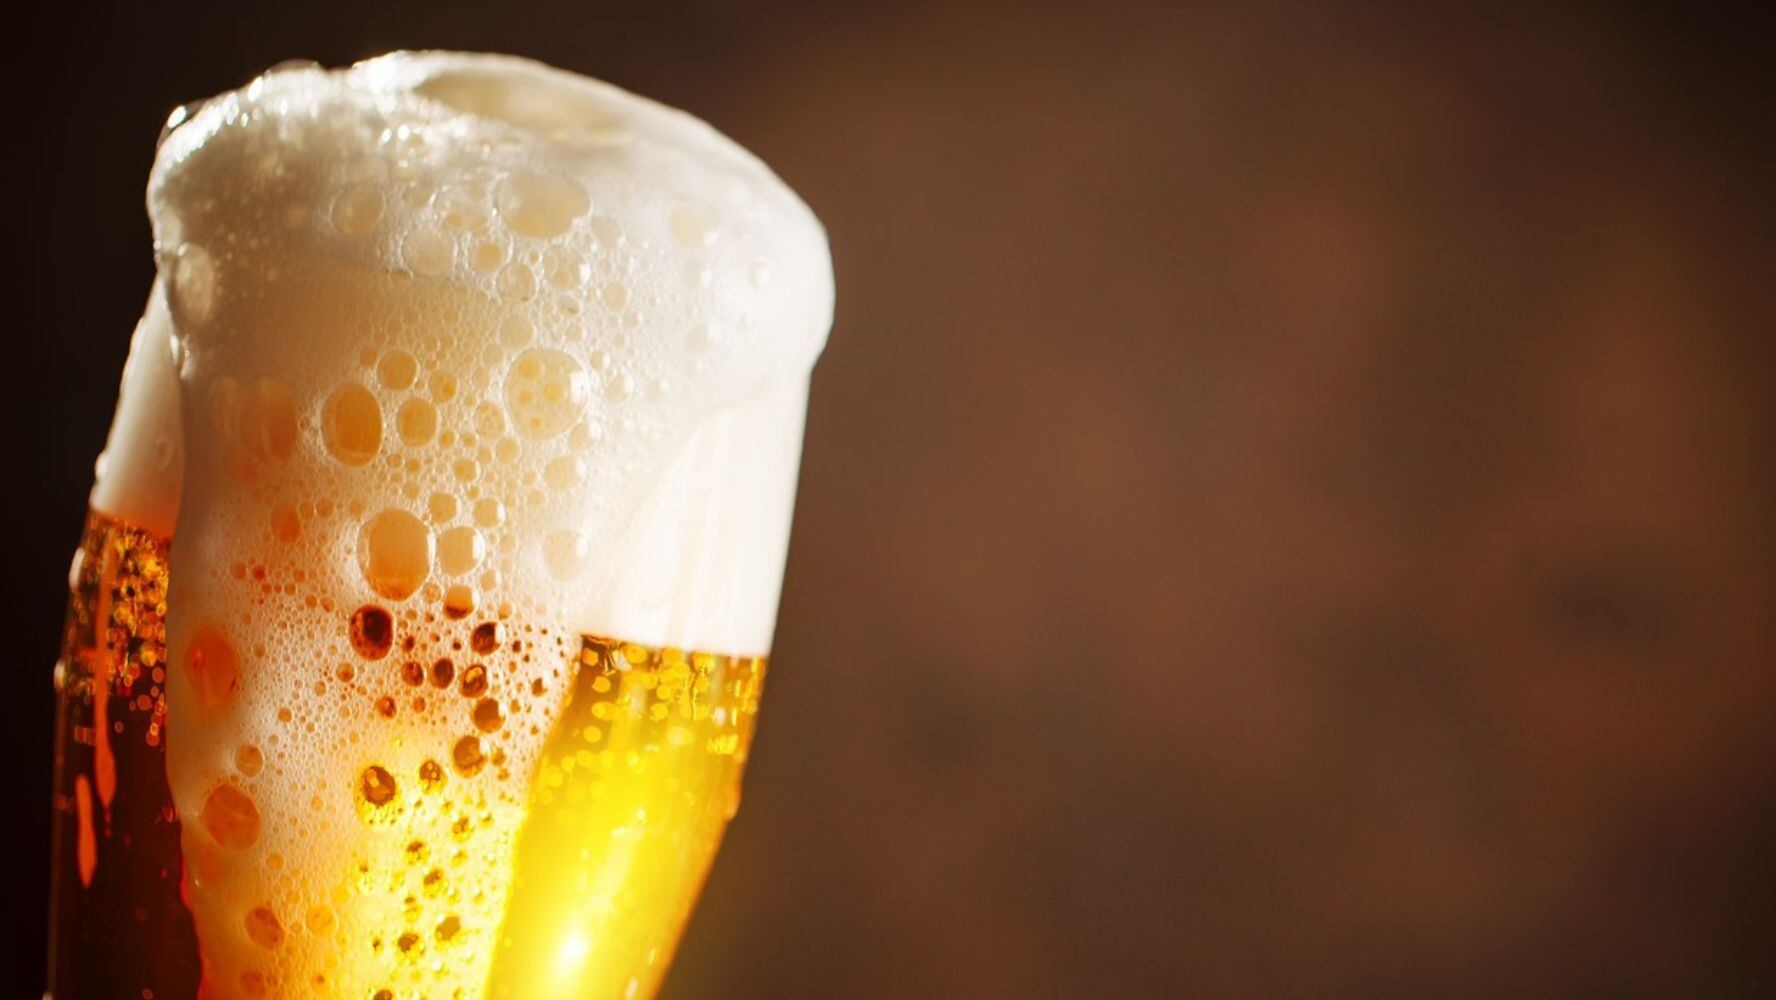 La cerveza puede encontrase en diferentes presentaciones. (Foto: Shutterstock)